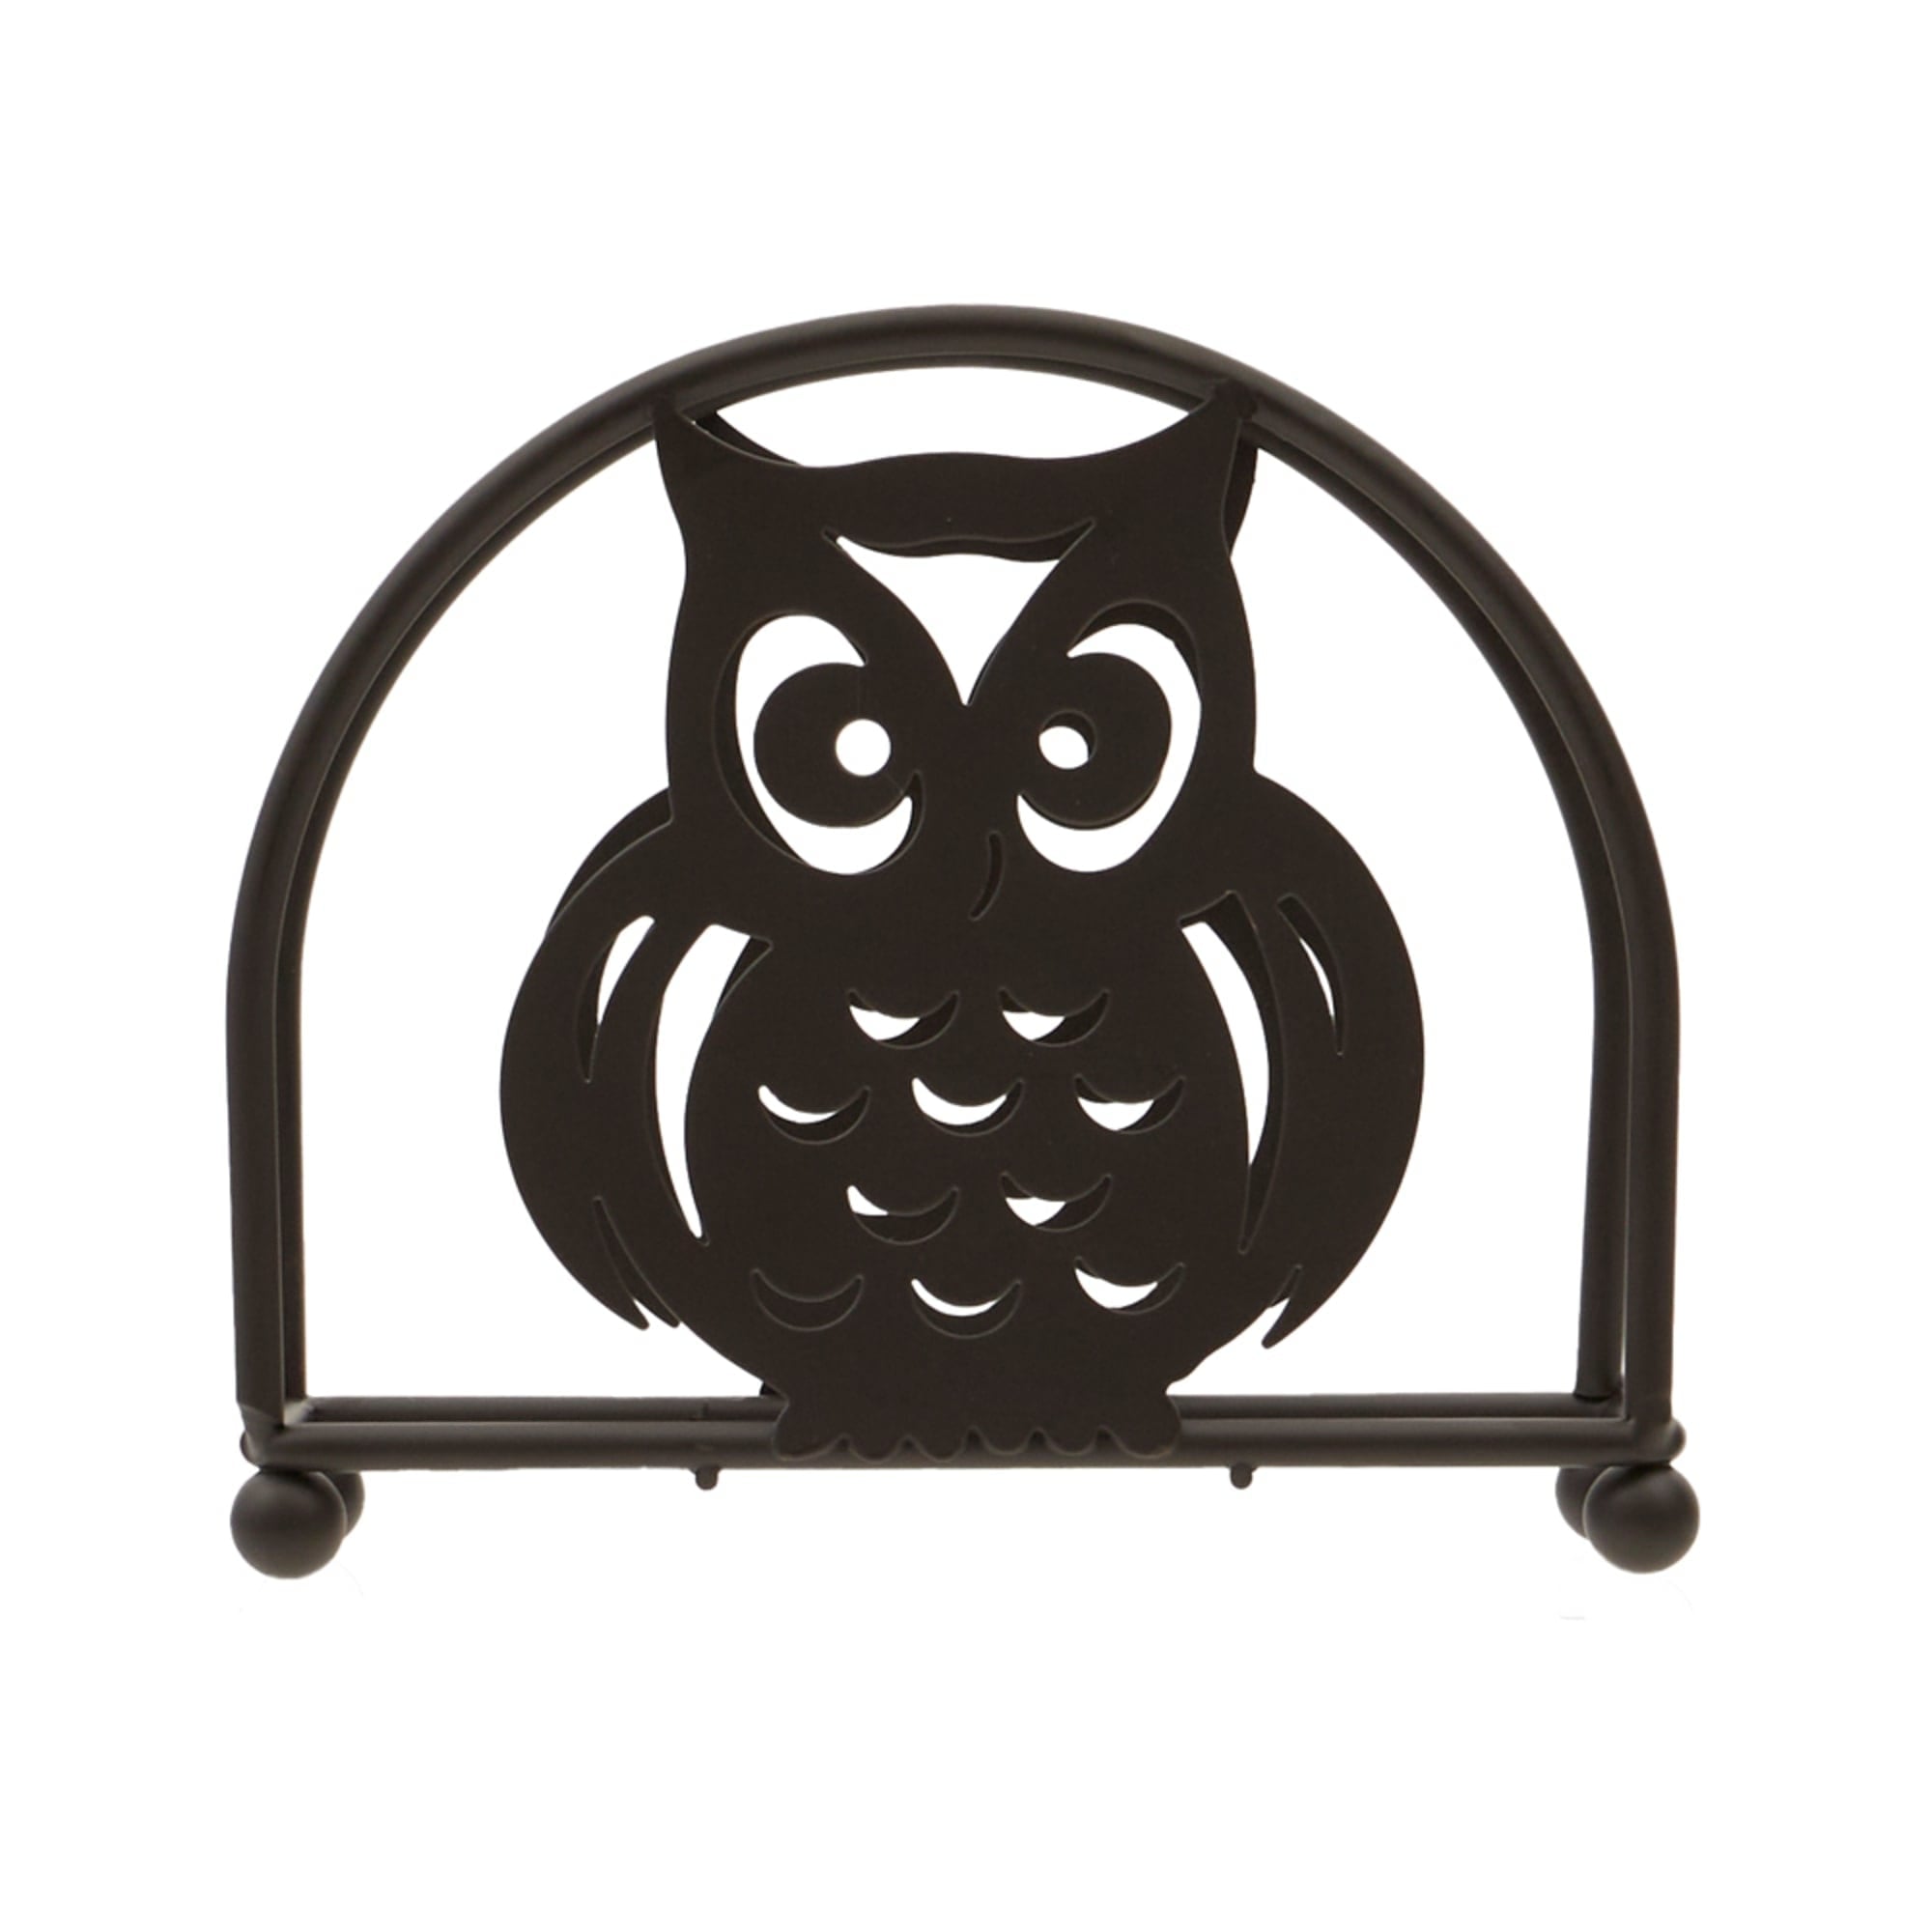 Home Basics Owl Napkin Holder, Bronze $5.00 EACH, CASE PACK OF 12